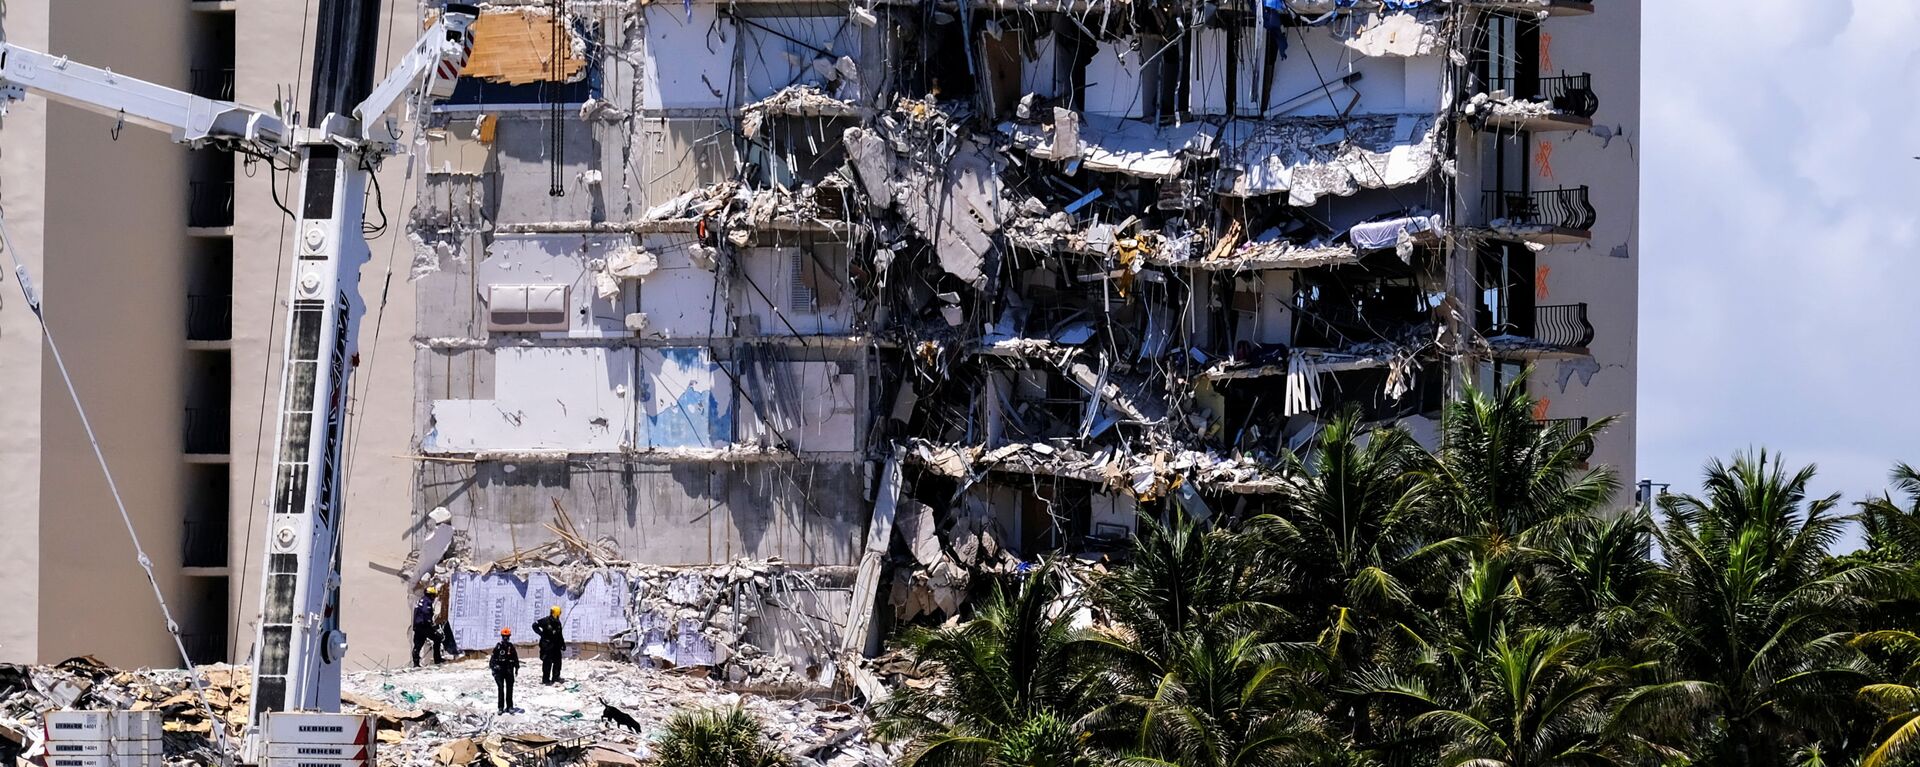 Частично разрушенное жилое здание в Серфсайде недалеко от Майами-Бич, Флорида - Sputnik Беларусь, 1920, 27.06.2021